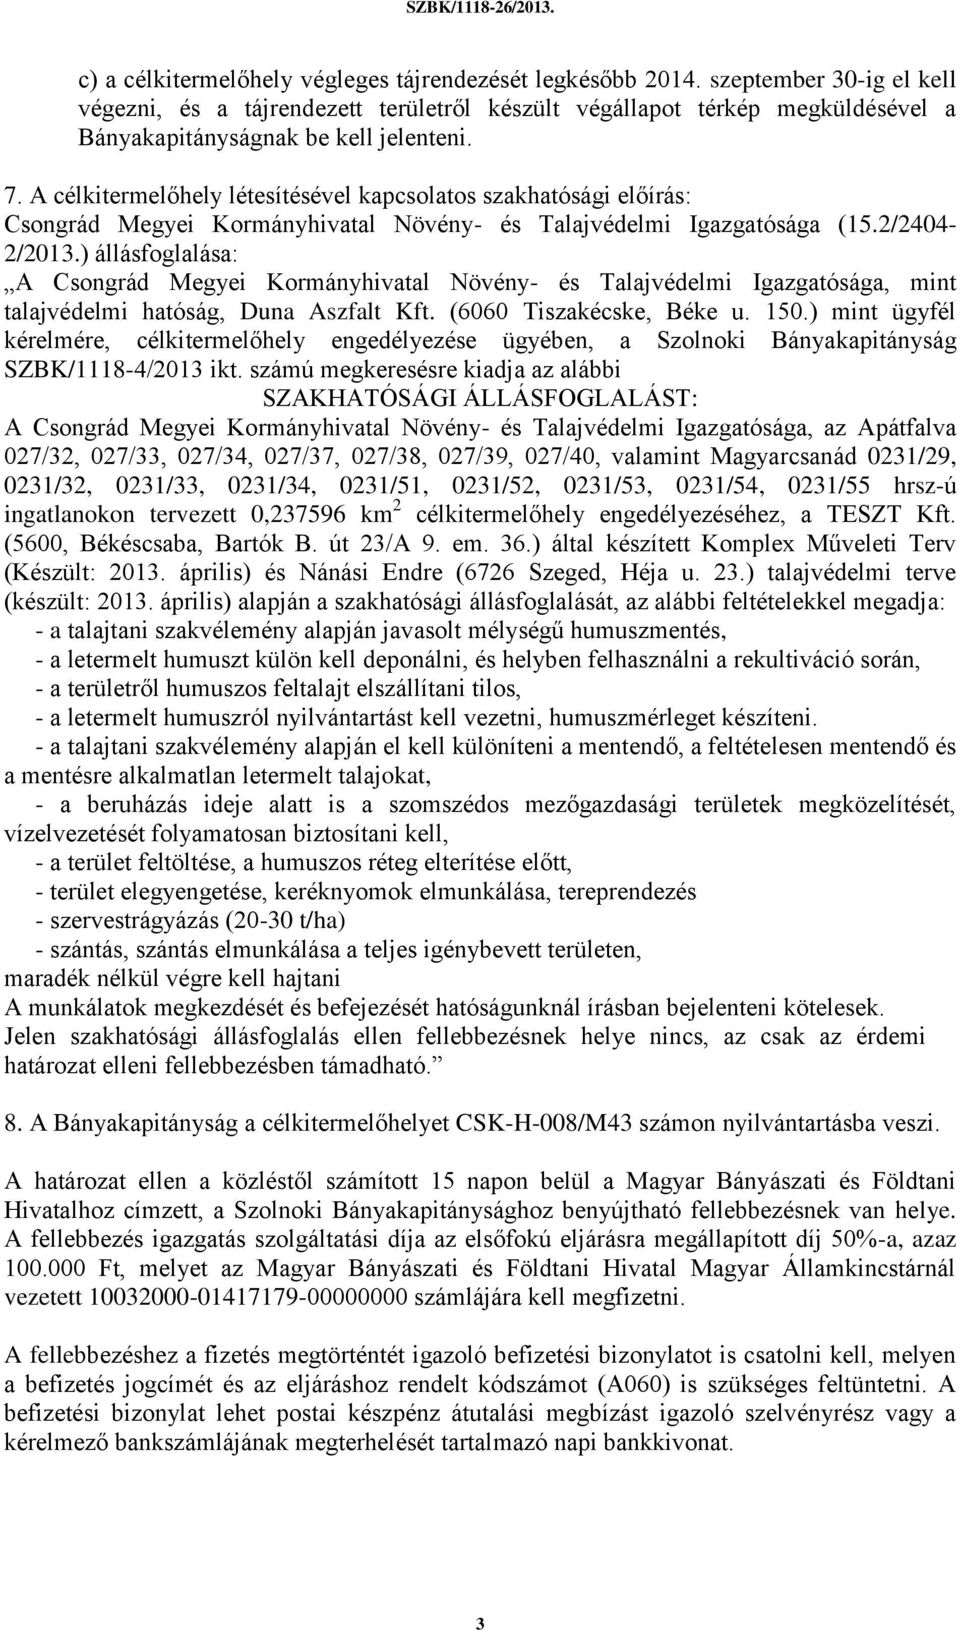 A célkitermelőhely létesítésével kapcsolatos szakhatósági előírás: Csongrád Megyei Kormányhivatal Növény- és Talajvédelmi Igazgatósága (15.2/2404-2/2013.